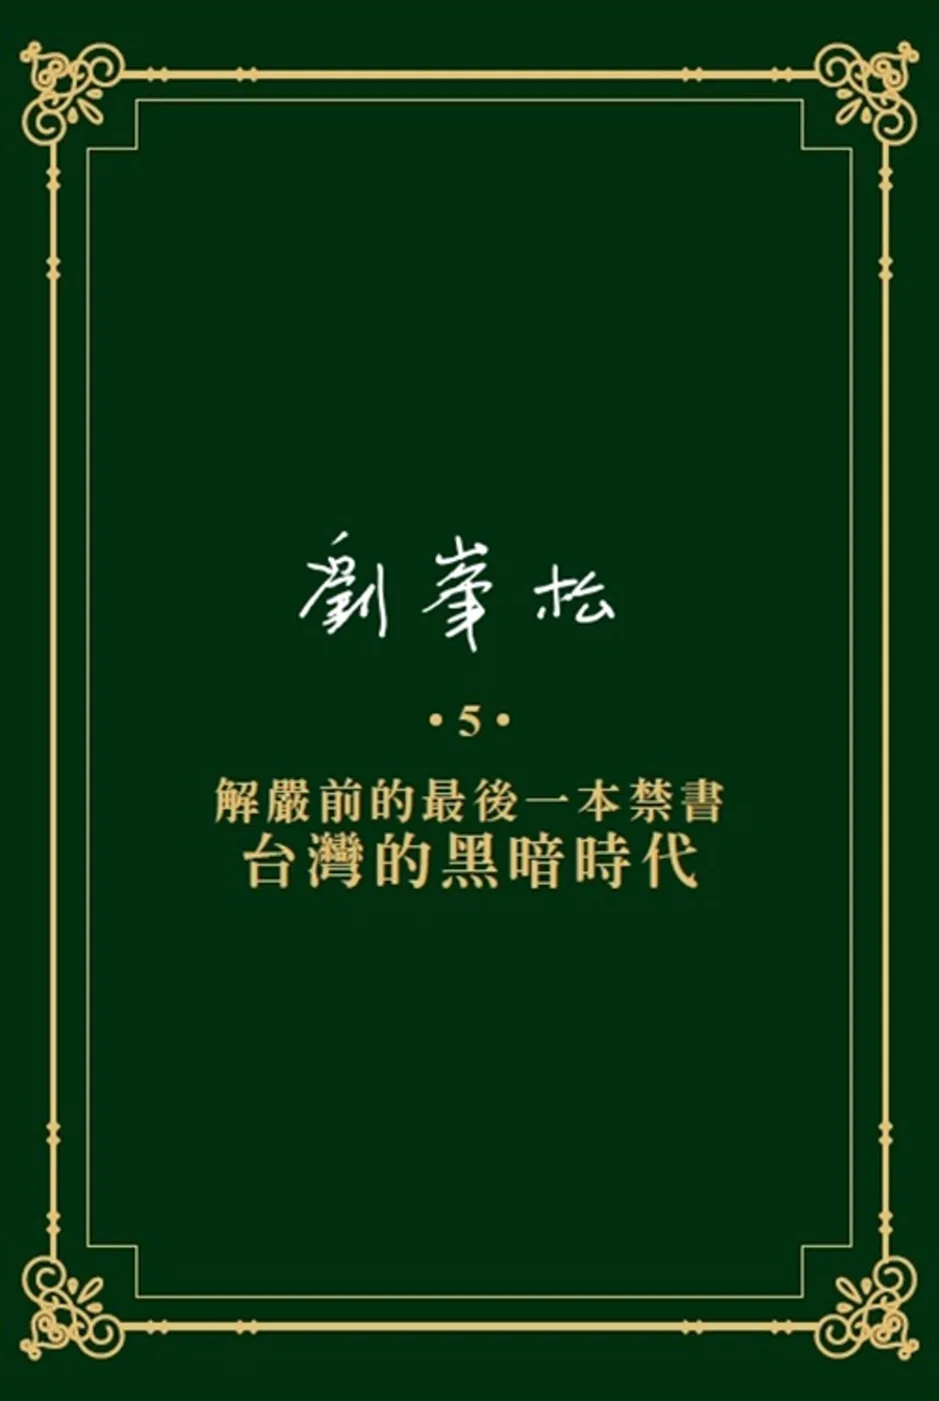 劉?松全集5：解嚴前的最後一本禁書—台灣的黑暗時代